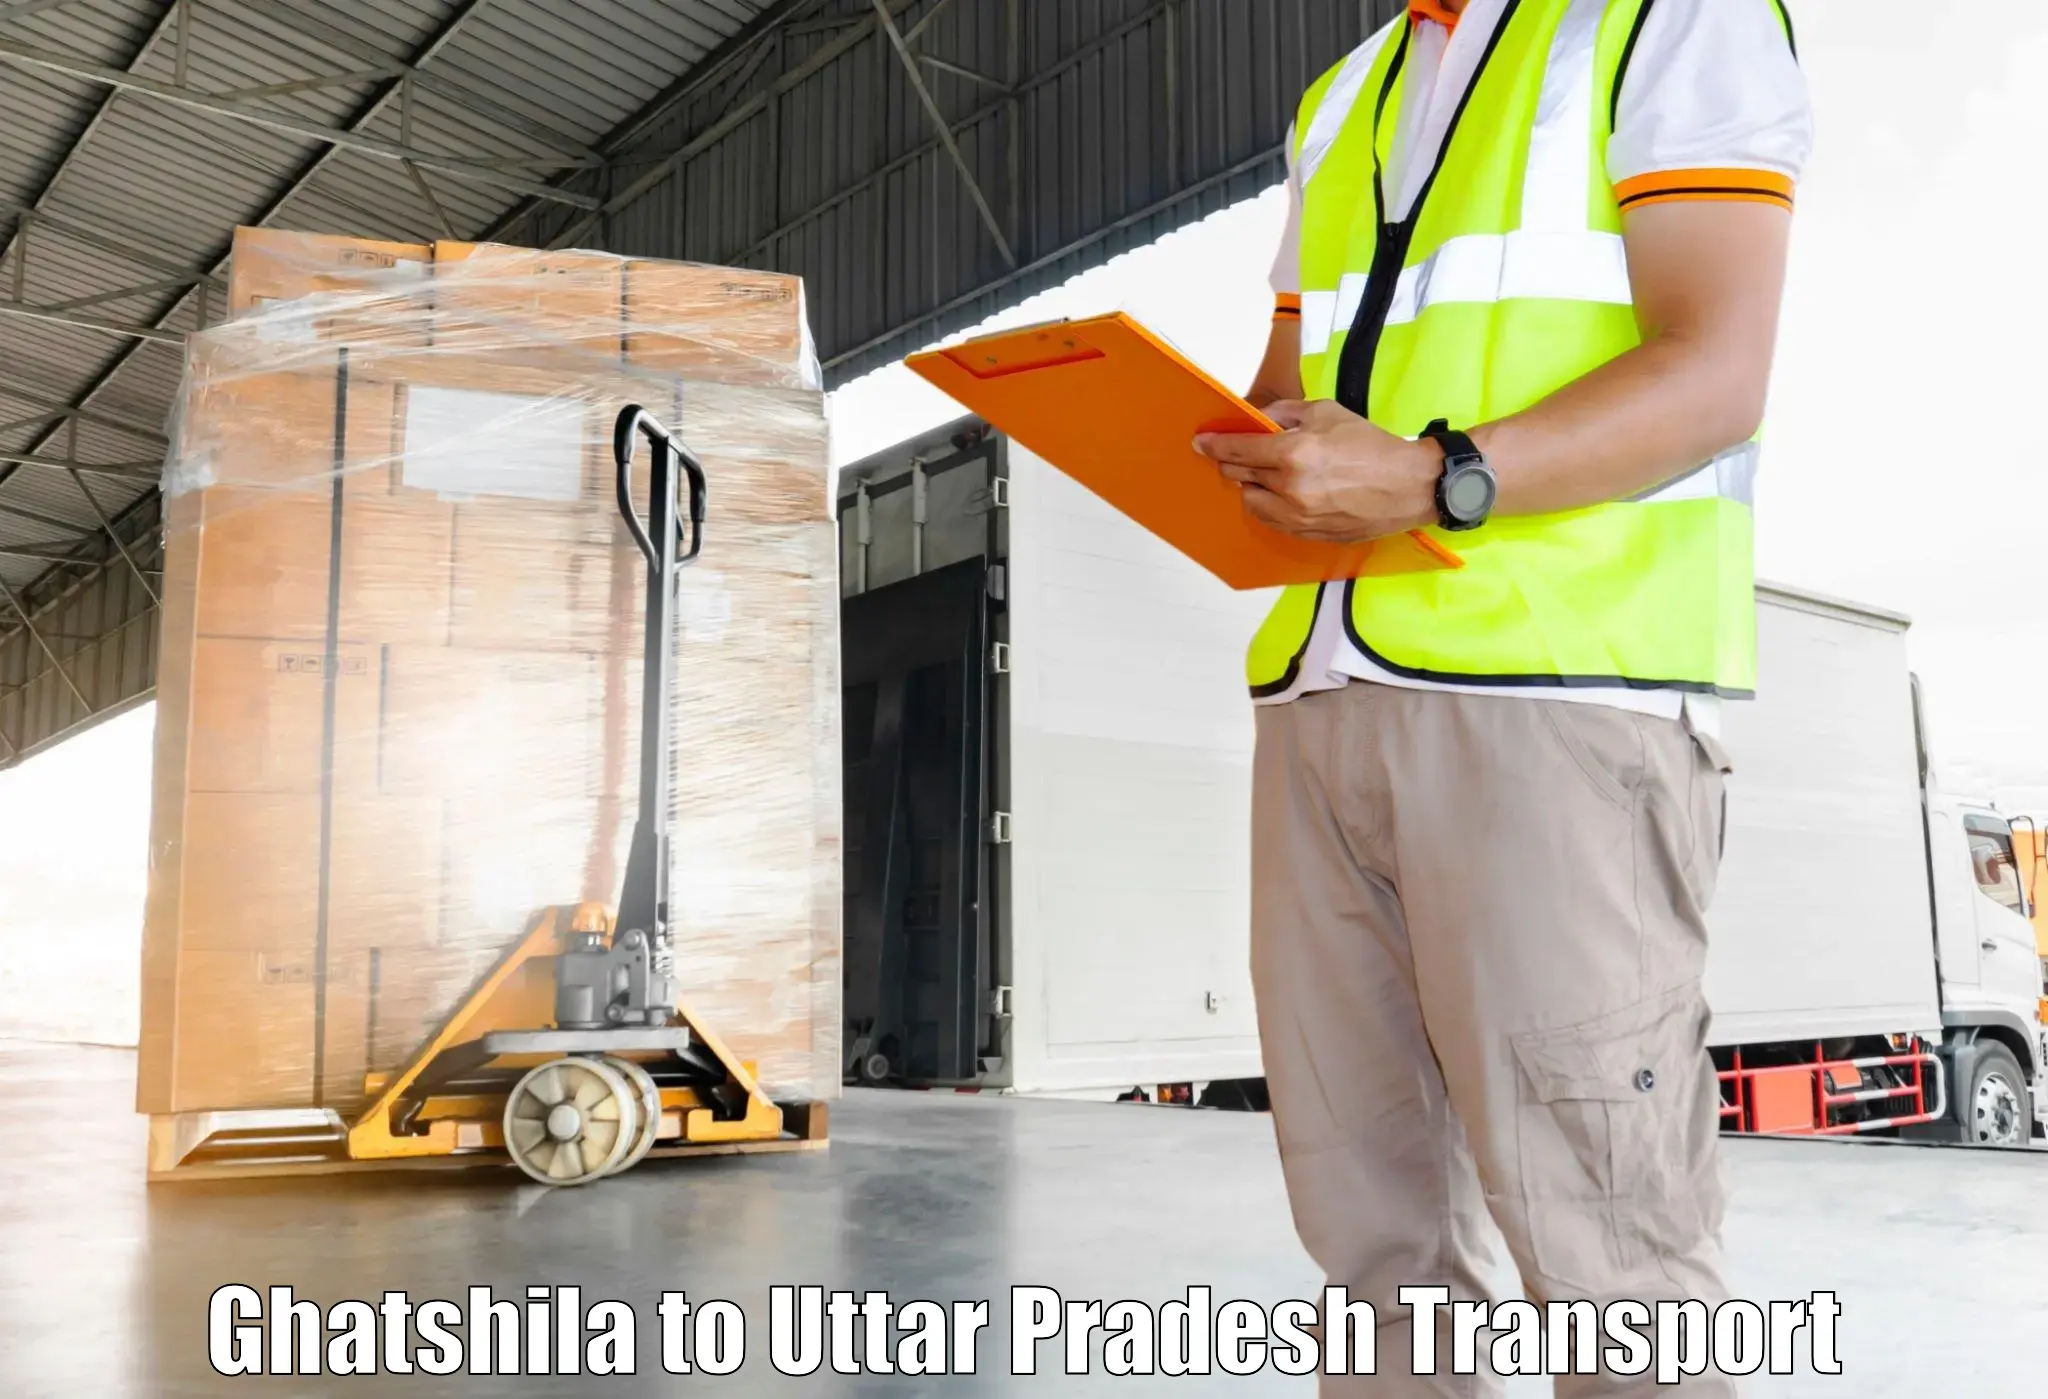 Daily transport service Ghatshila to Ayodhya